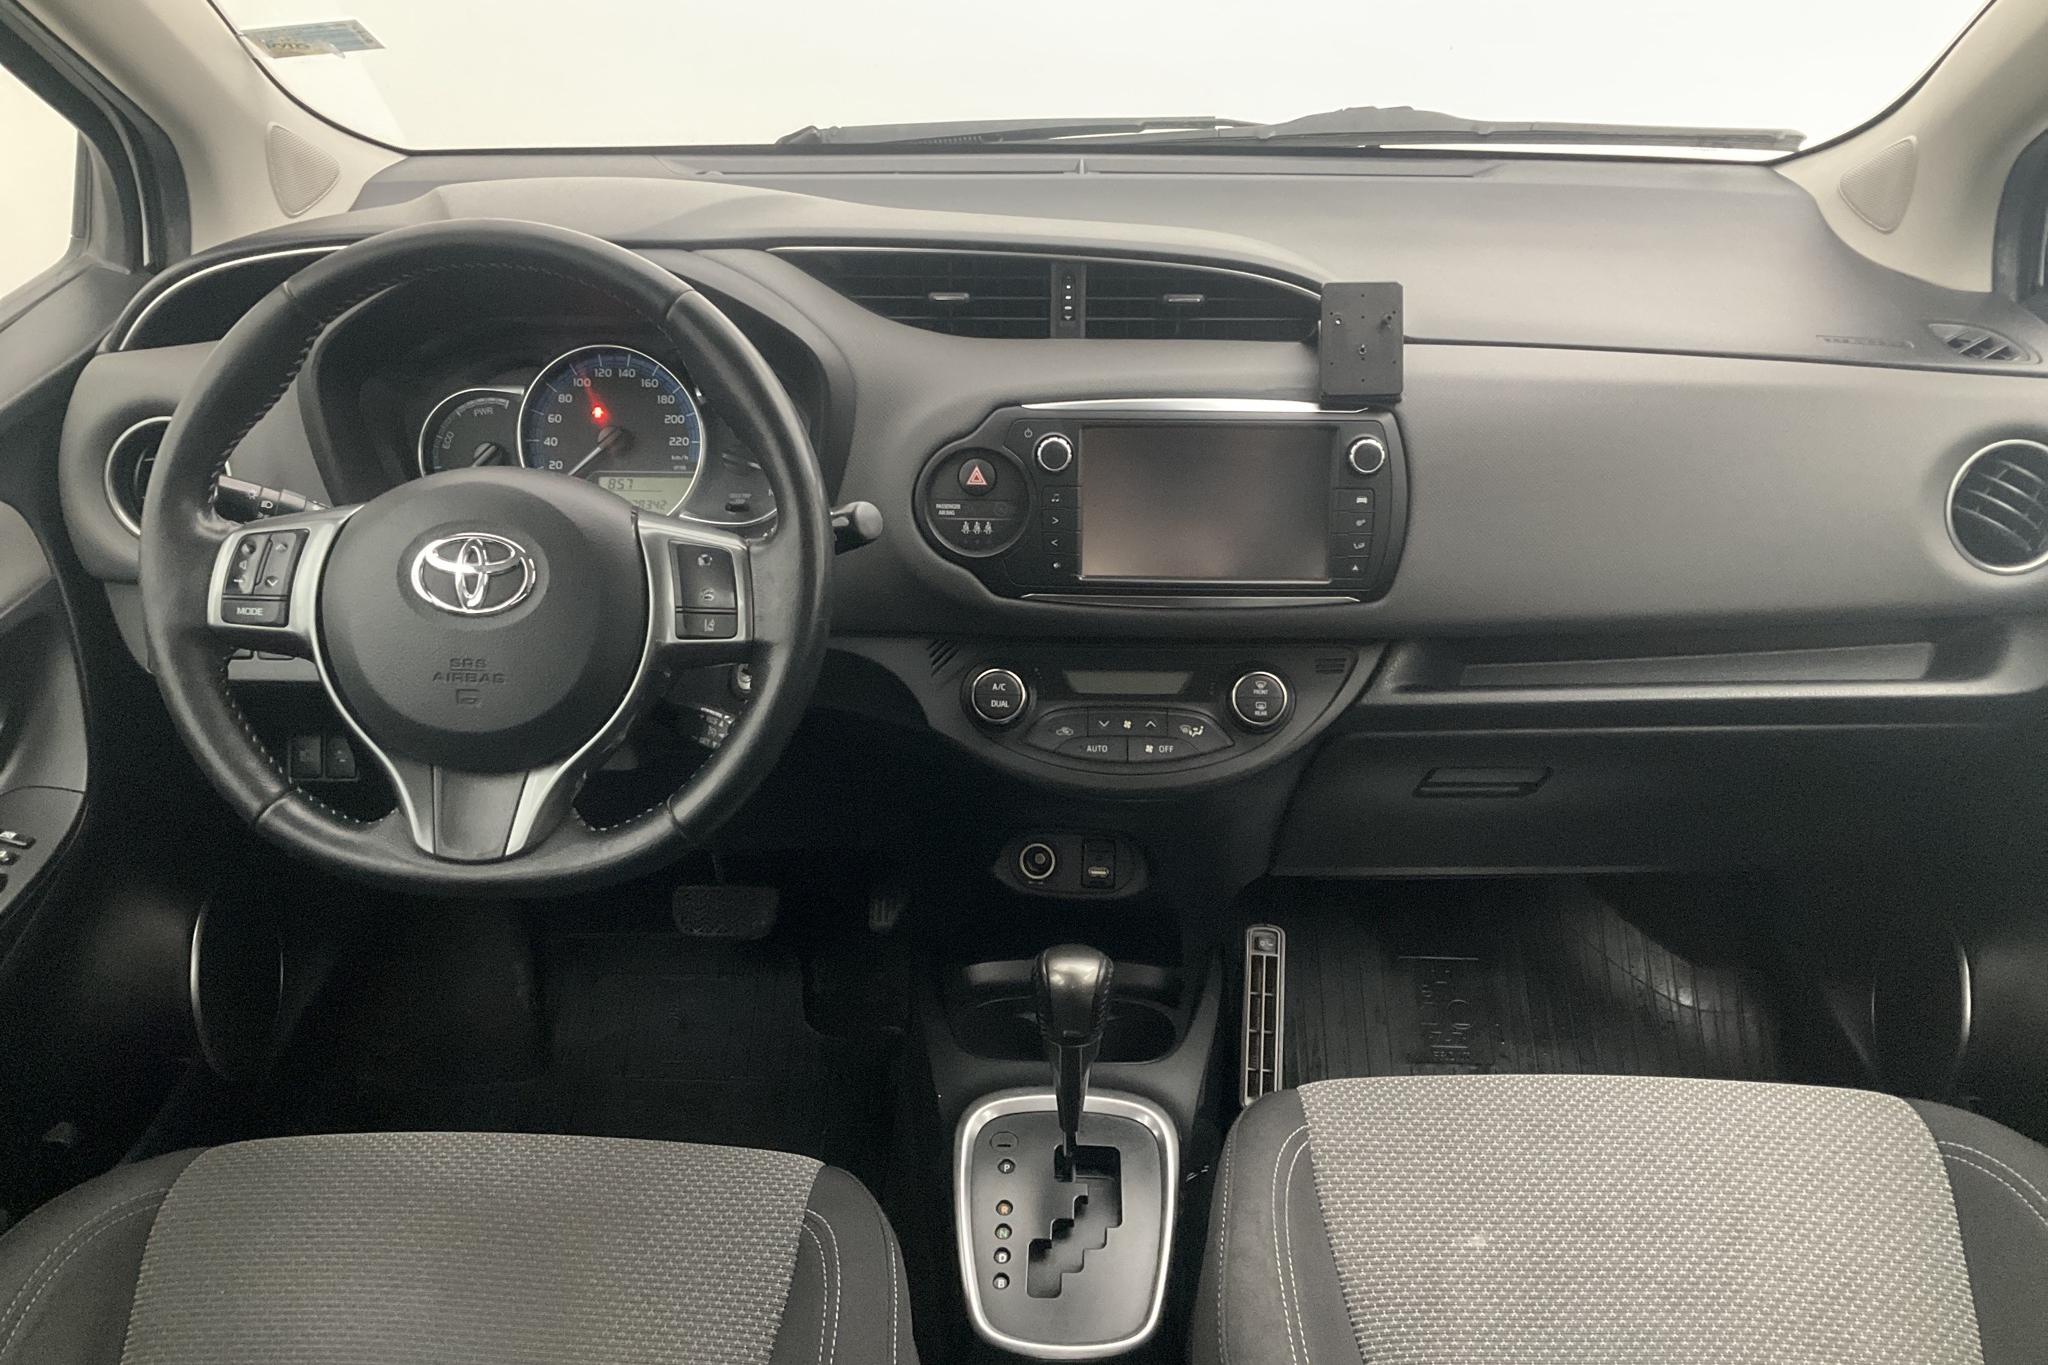 Toyota Yaris 1.5 HSD 5dr (75hk) - 178 340 km - Automatic - white - 2016